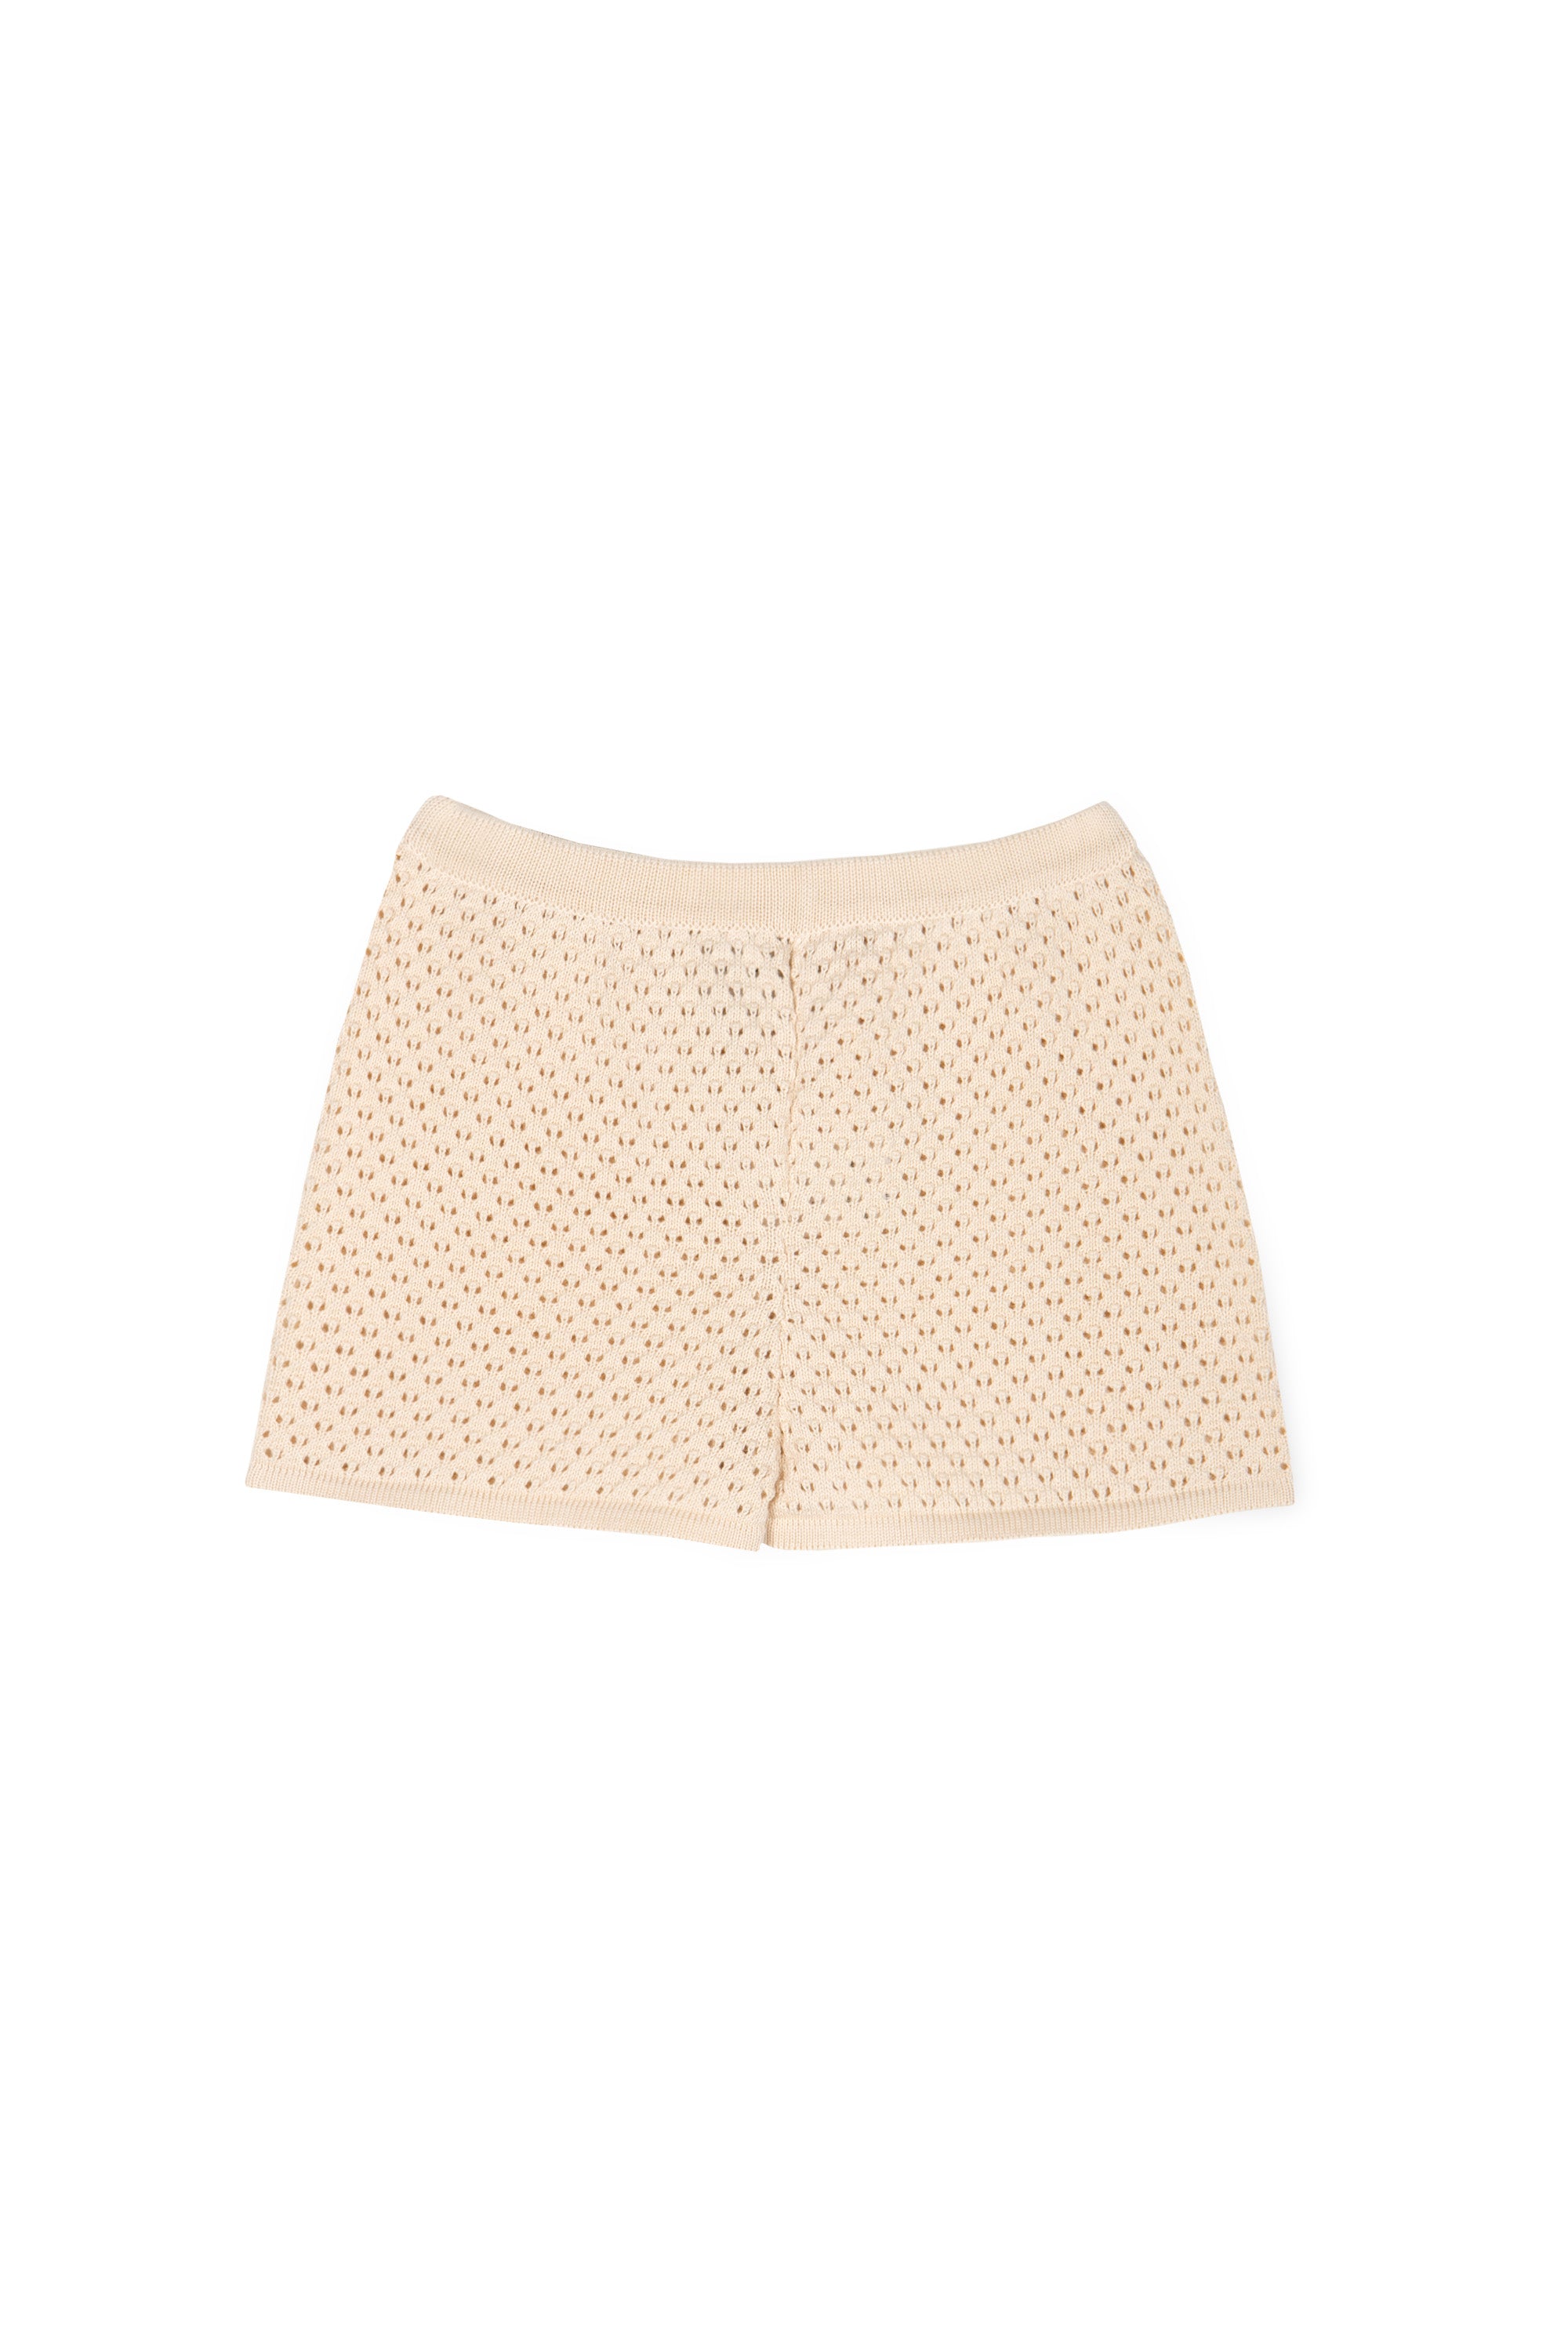 Mipounet - carola openwork shorts - cream